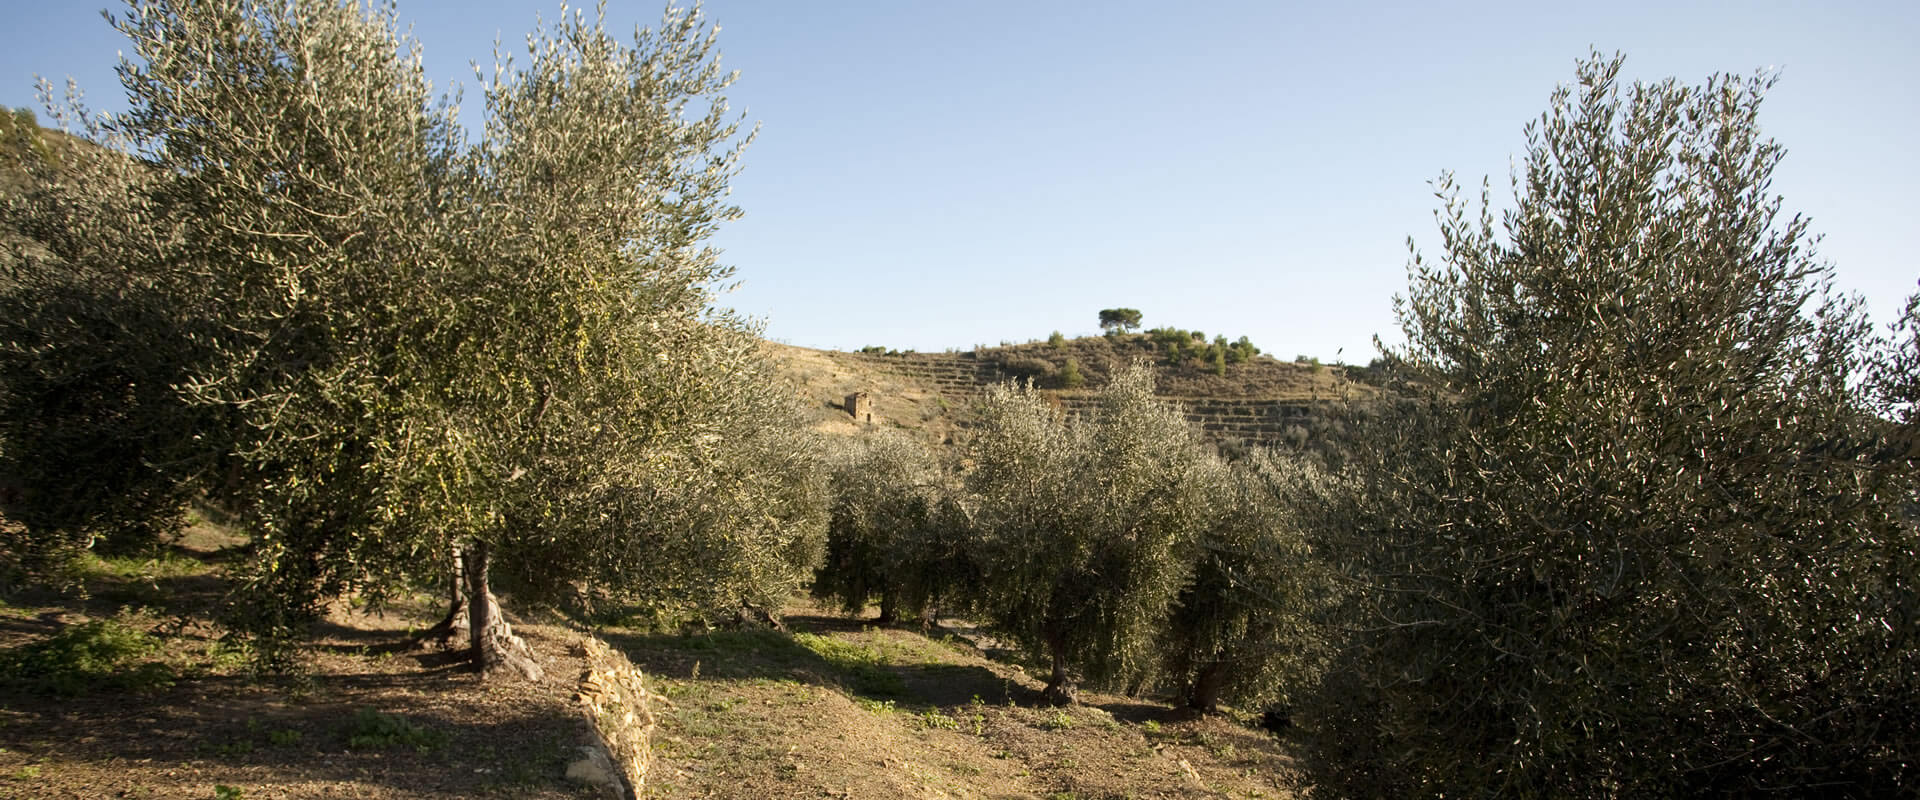 Olive taggiasche in salamoia – Fratelli Carli